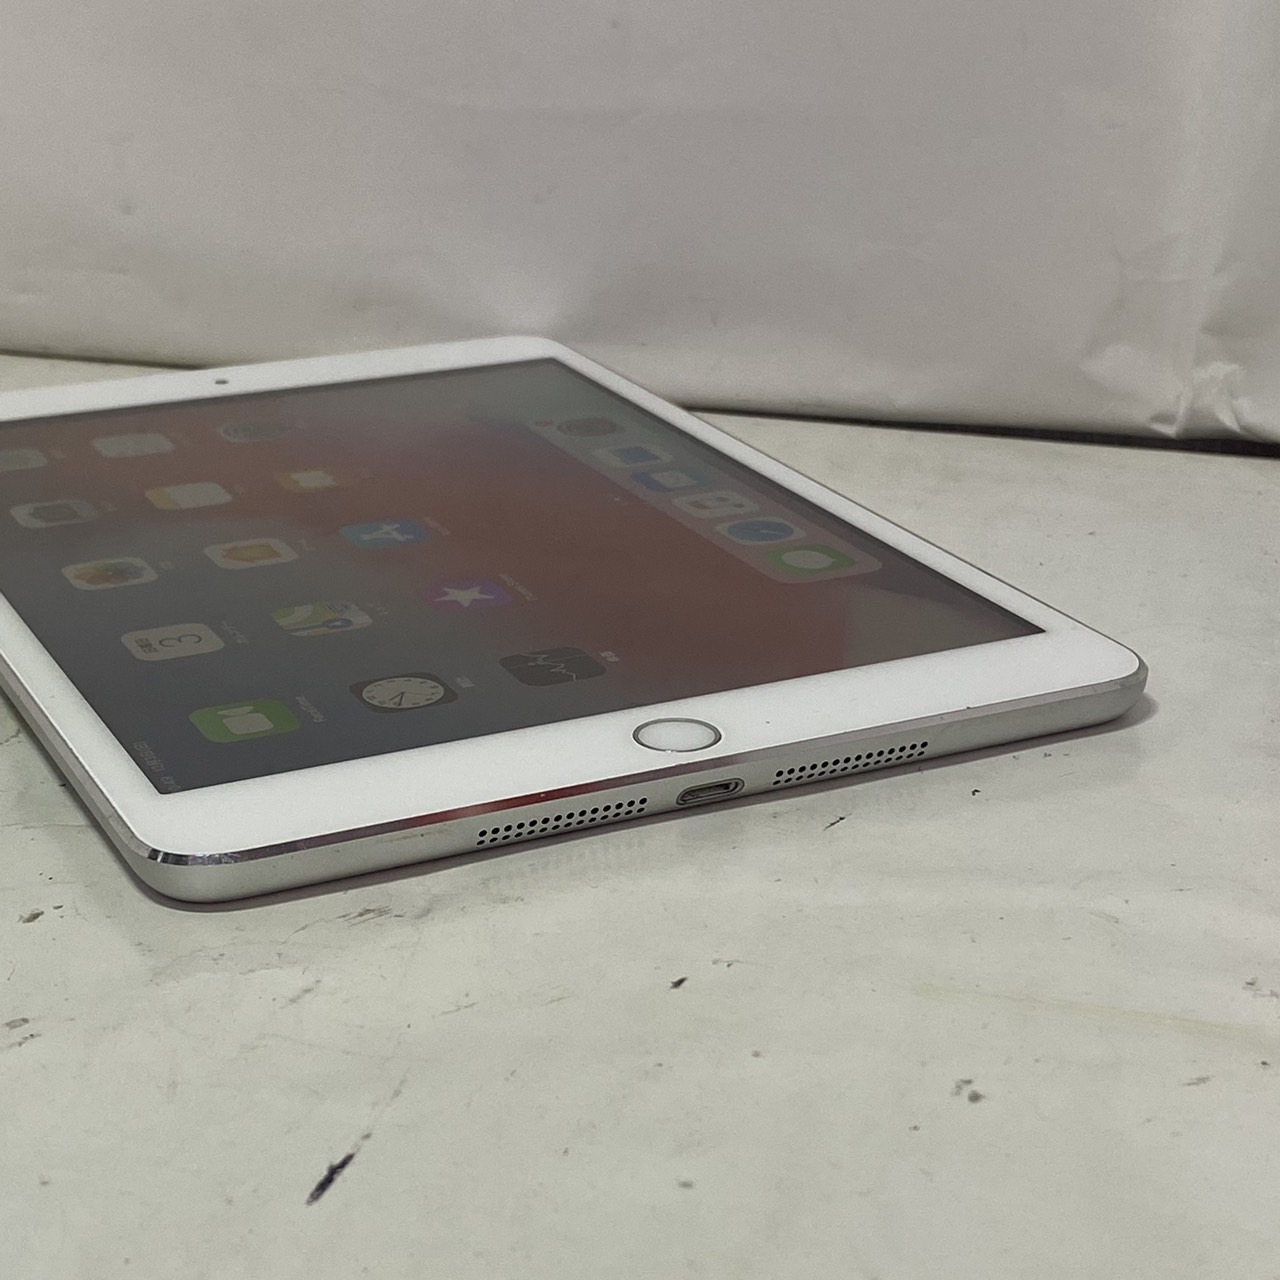 iPadiPad mini 3 Wi-Fi+Cellular 16GB